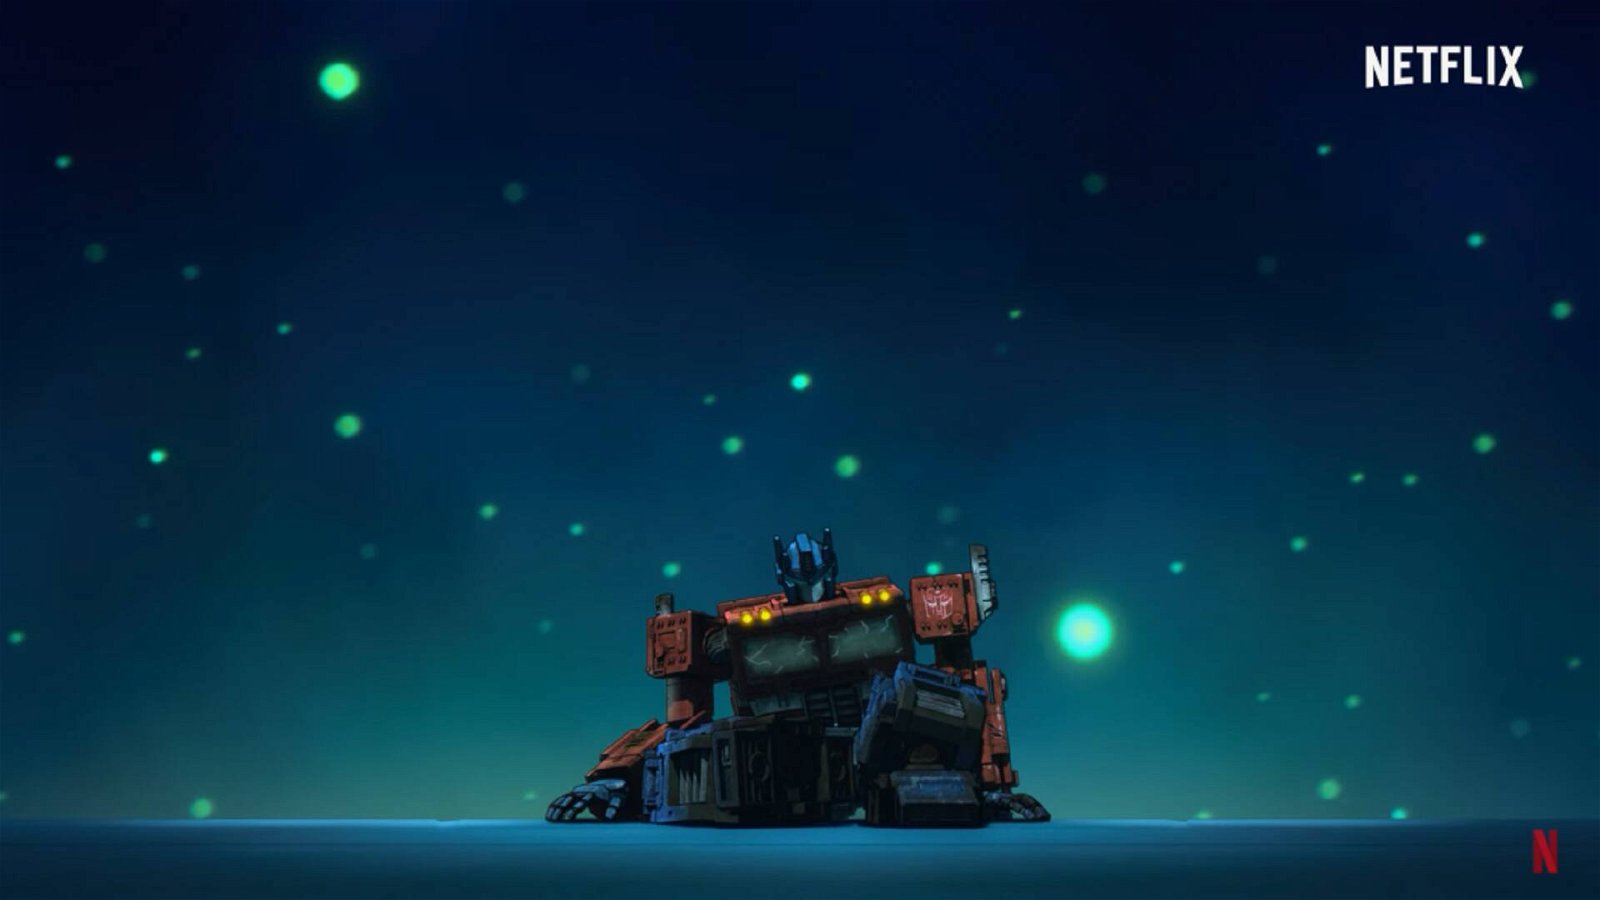 Immagine di Transformers: War for Cybertron Trilogy - Il Regno, il trailer ufficiale